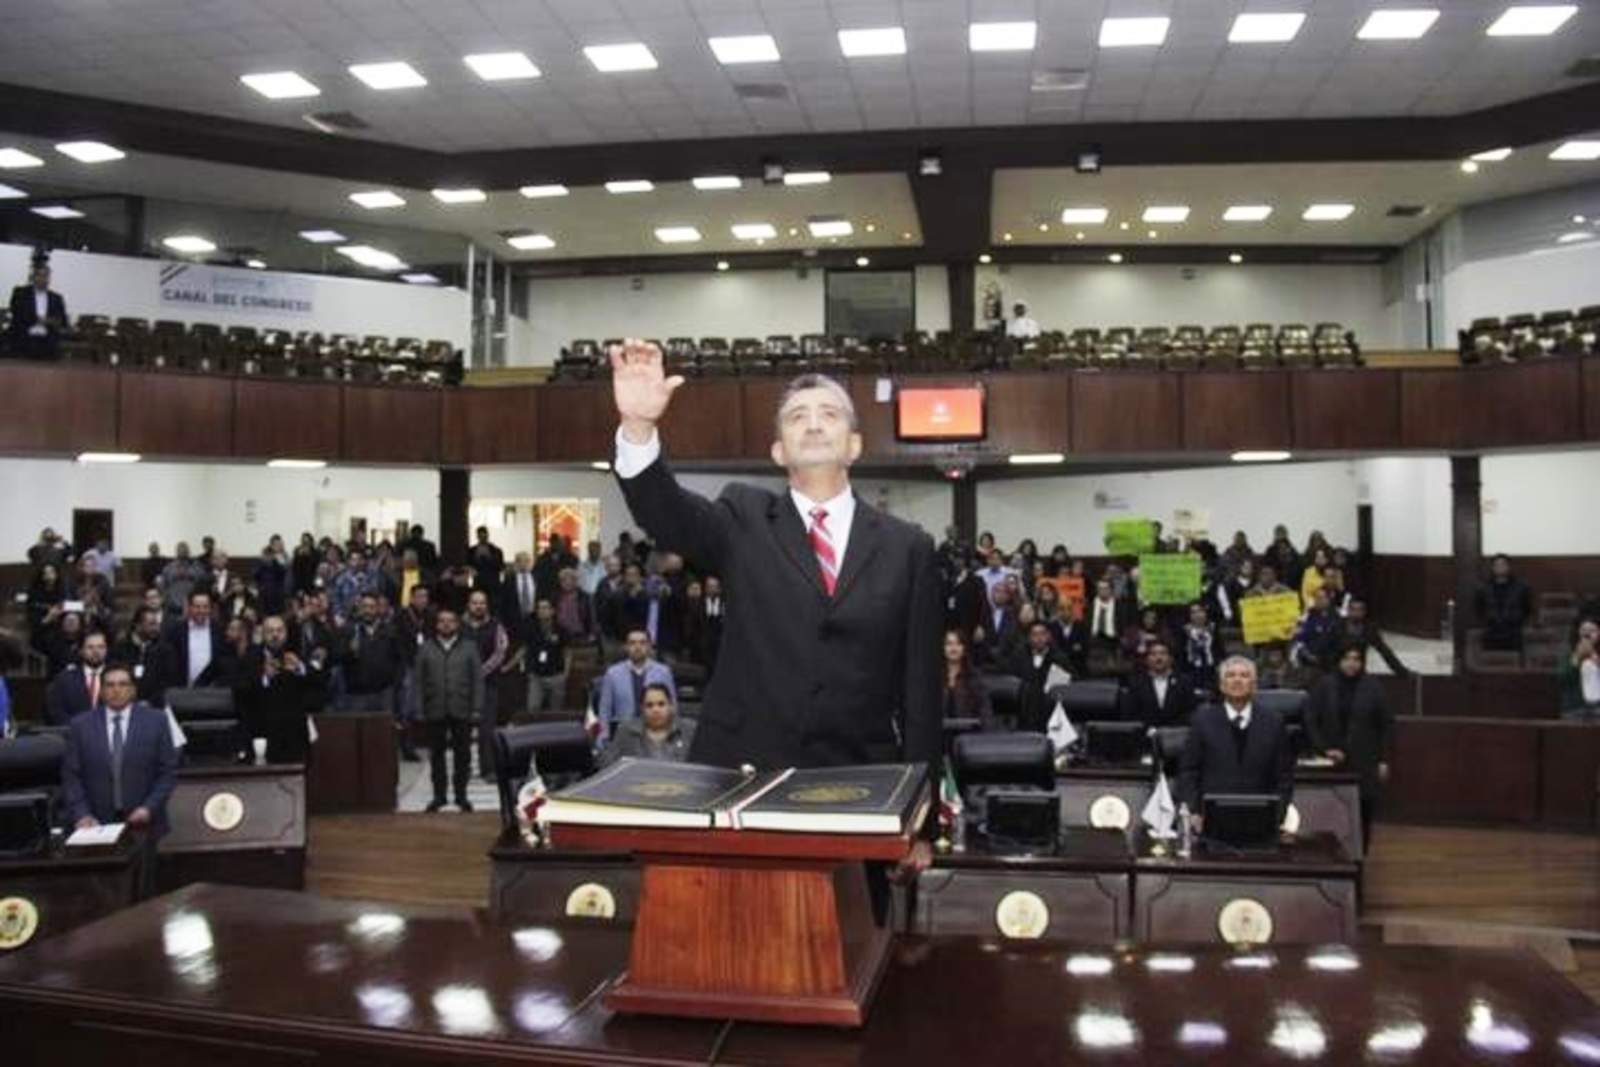 En conferencia de prensa, García Rodríguez dijo que el combate a la corrupción será una realidad cada vez más sólida. (TWITTER)

